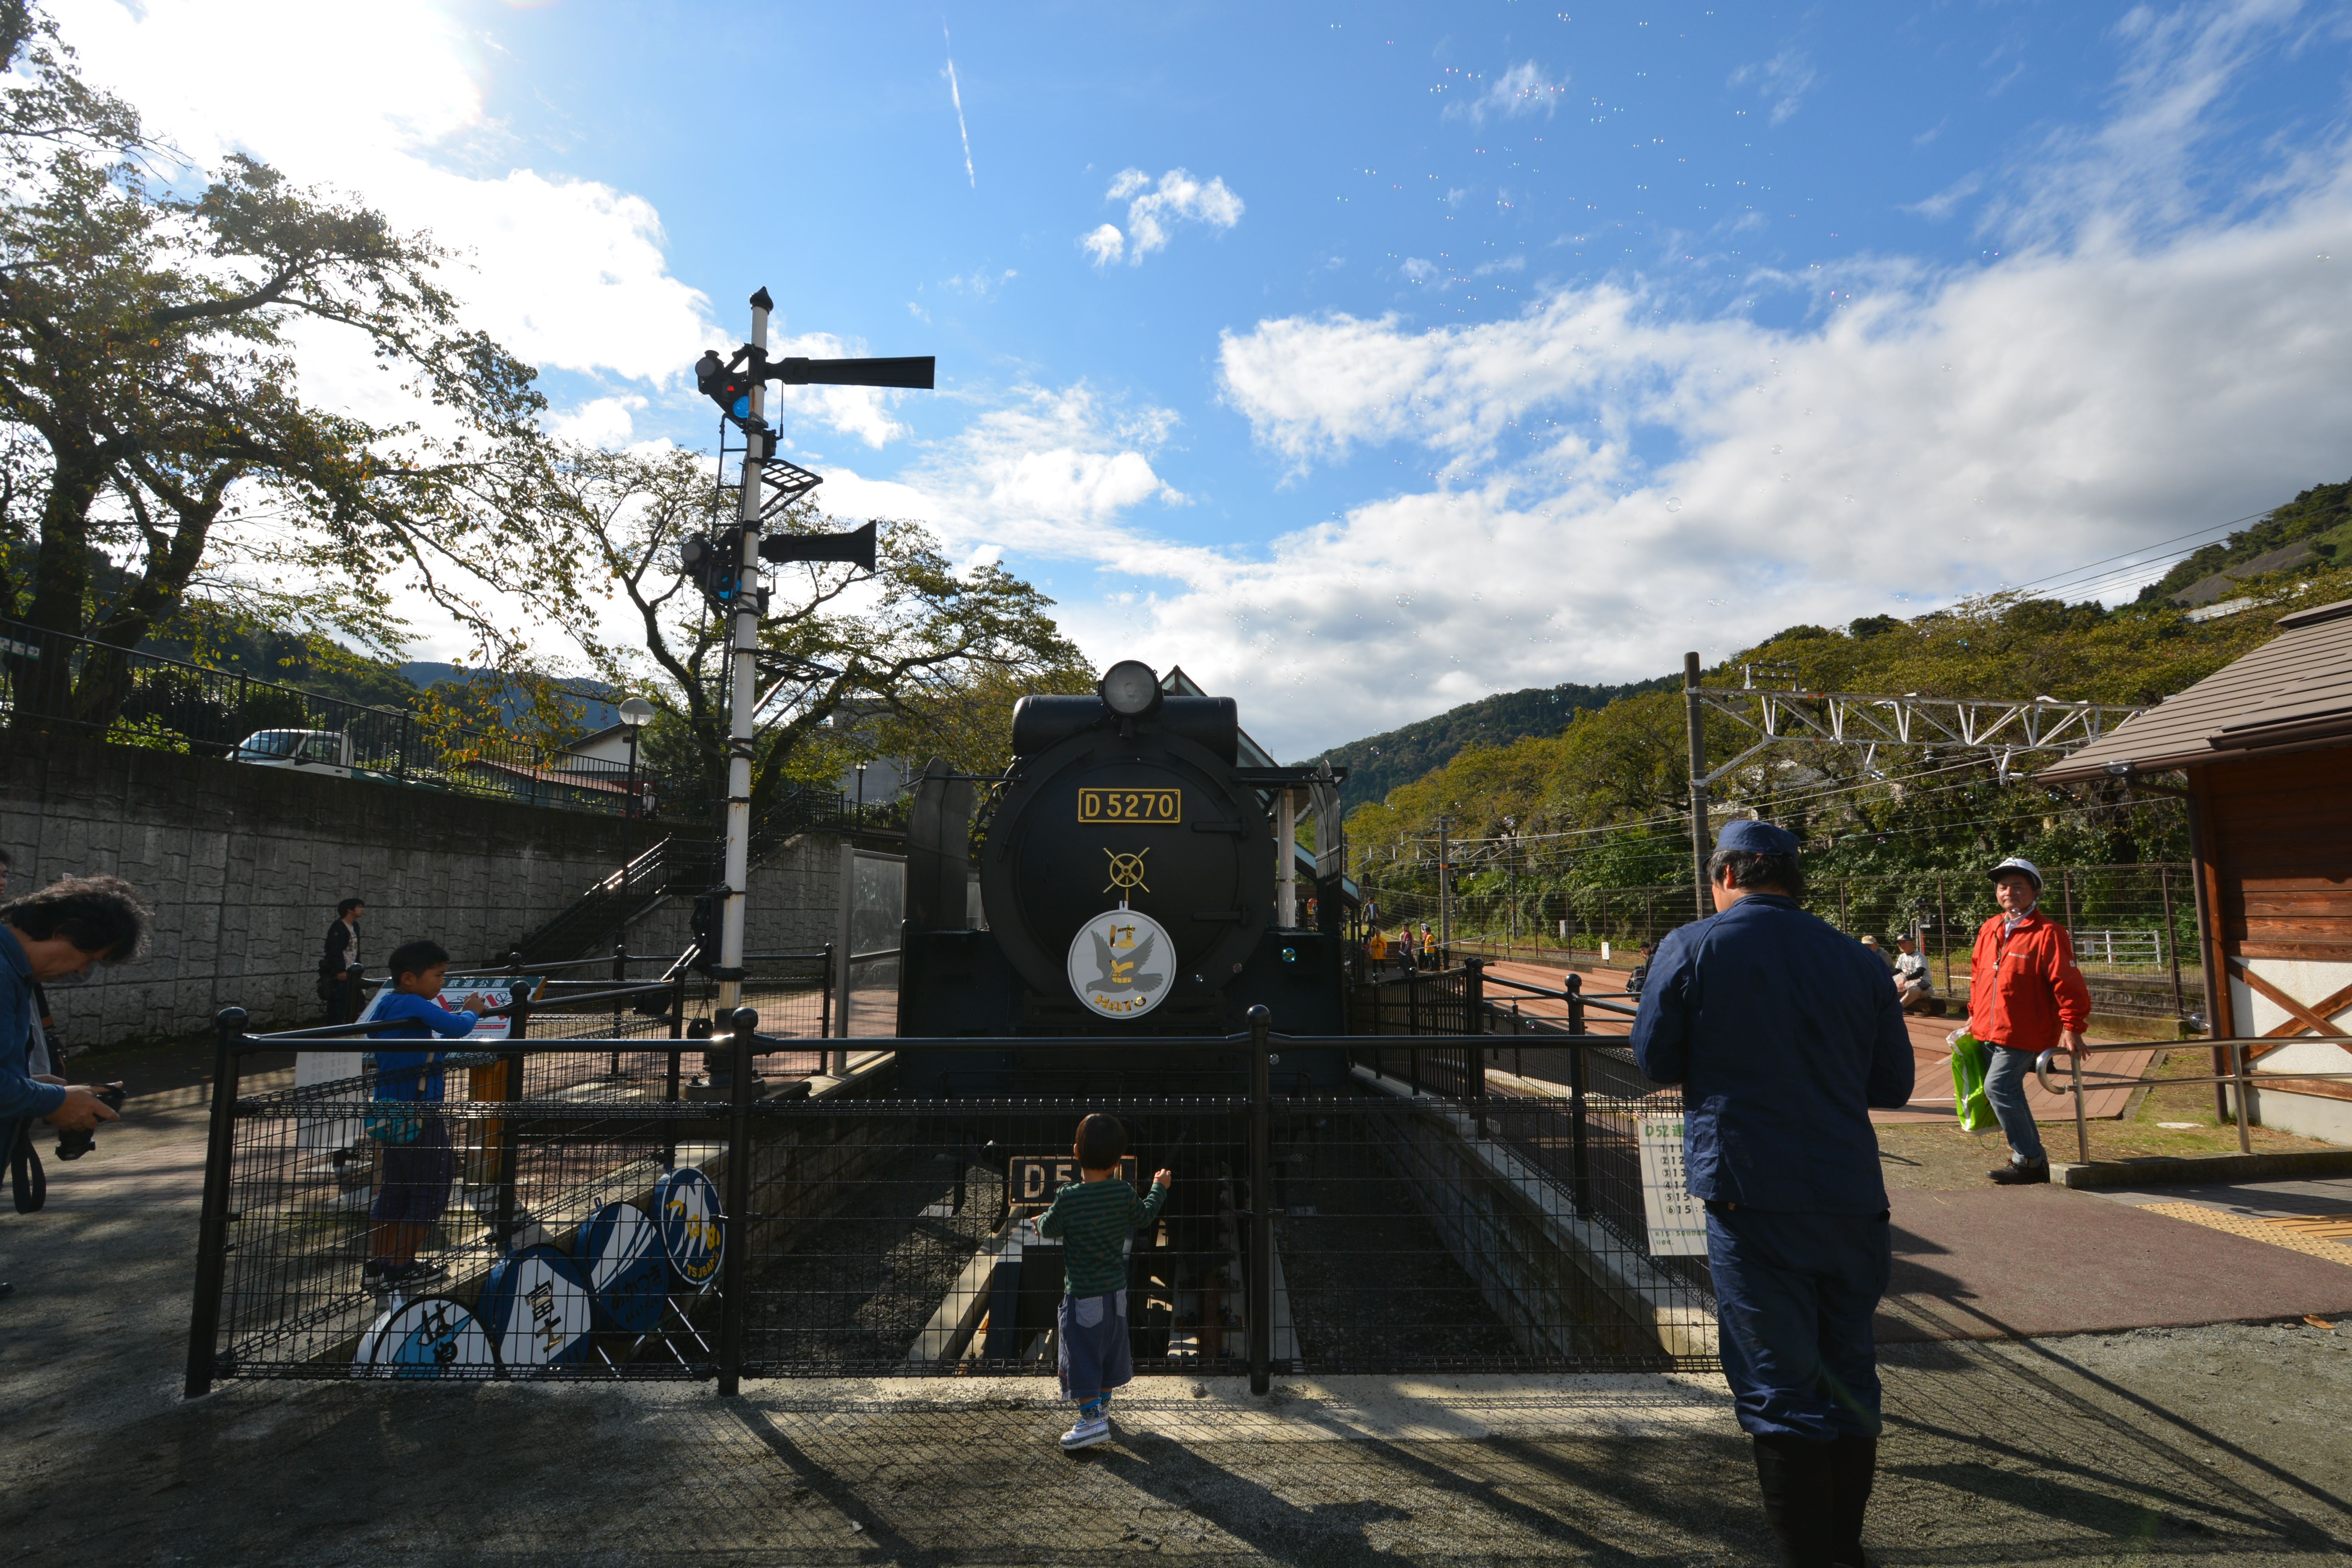 年2月sl整備運行日 D52が動く山北町 山北鉄道公園で 出発進行 神奈川 東京多摩のご近所情報 レアリア